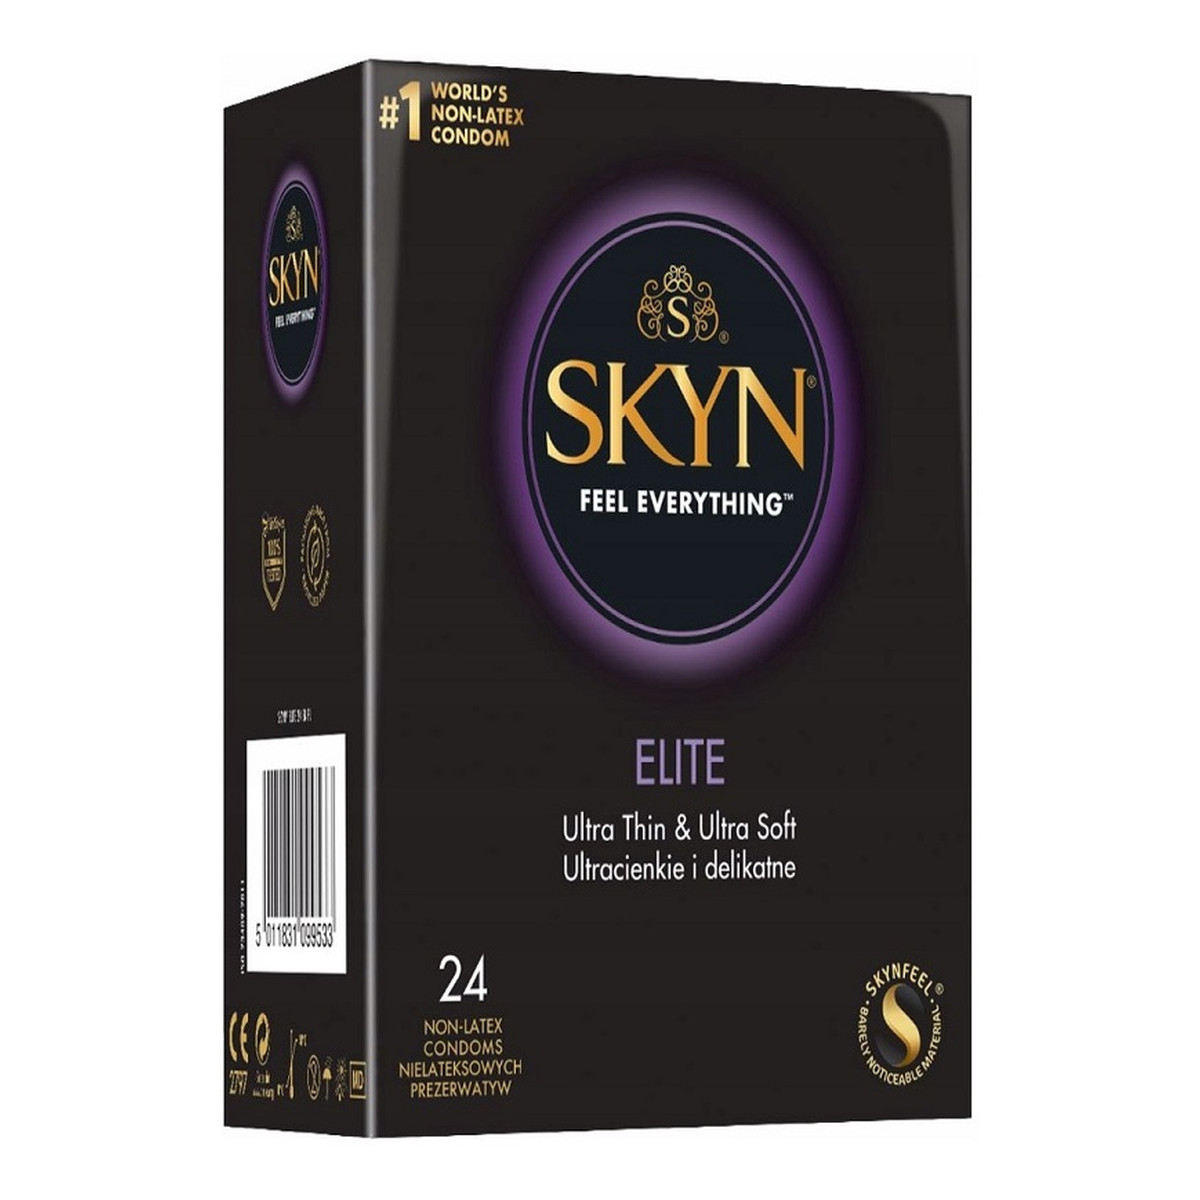 Unimil Skyn elite nielateksowe prezerwatywy 24szt